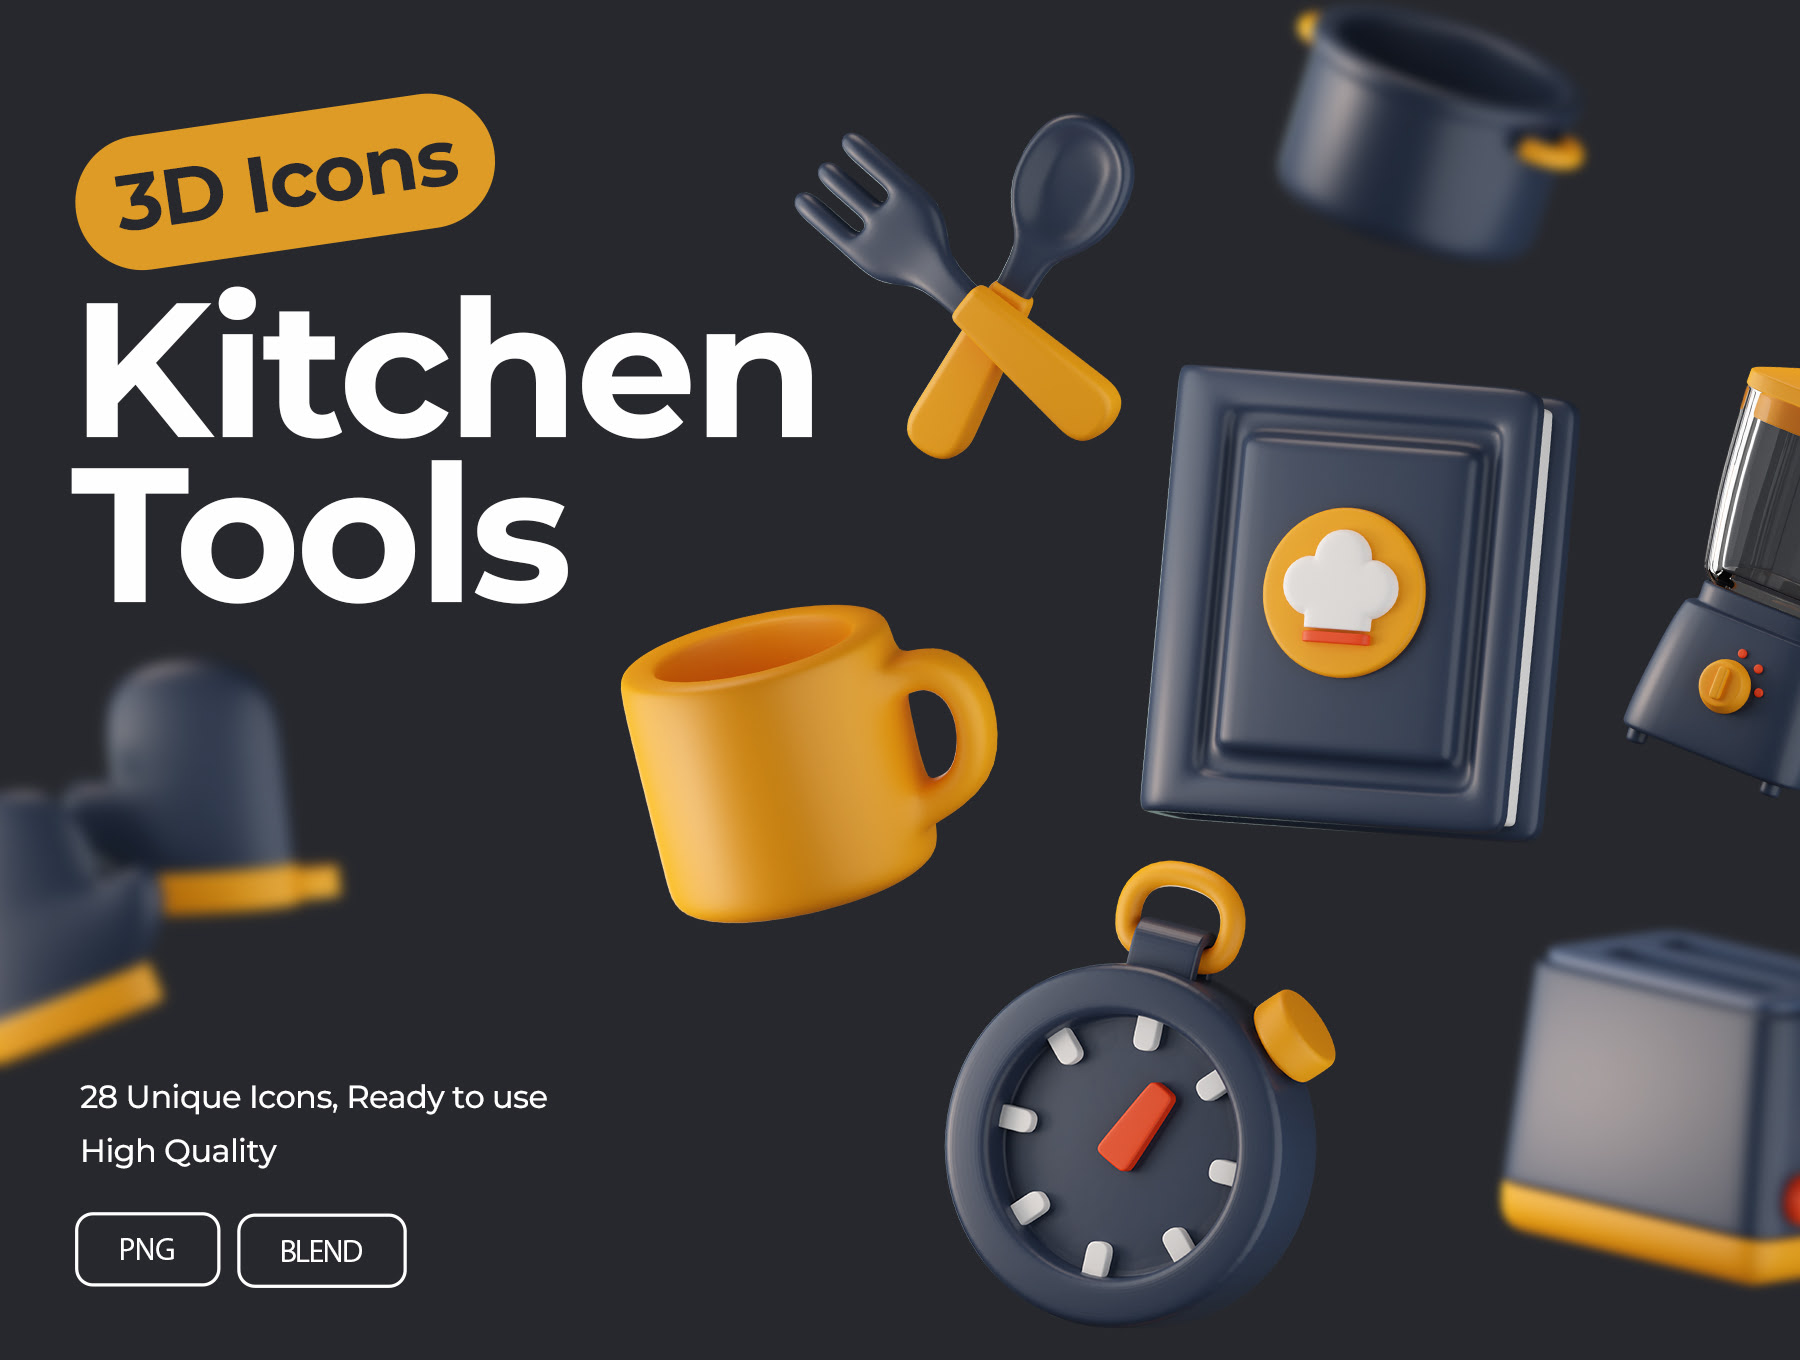 厨房工具3D图标 Kitchen Tools 3D Icons blender格式-3D/图标-到位啦UI